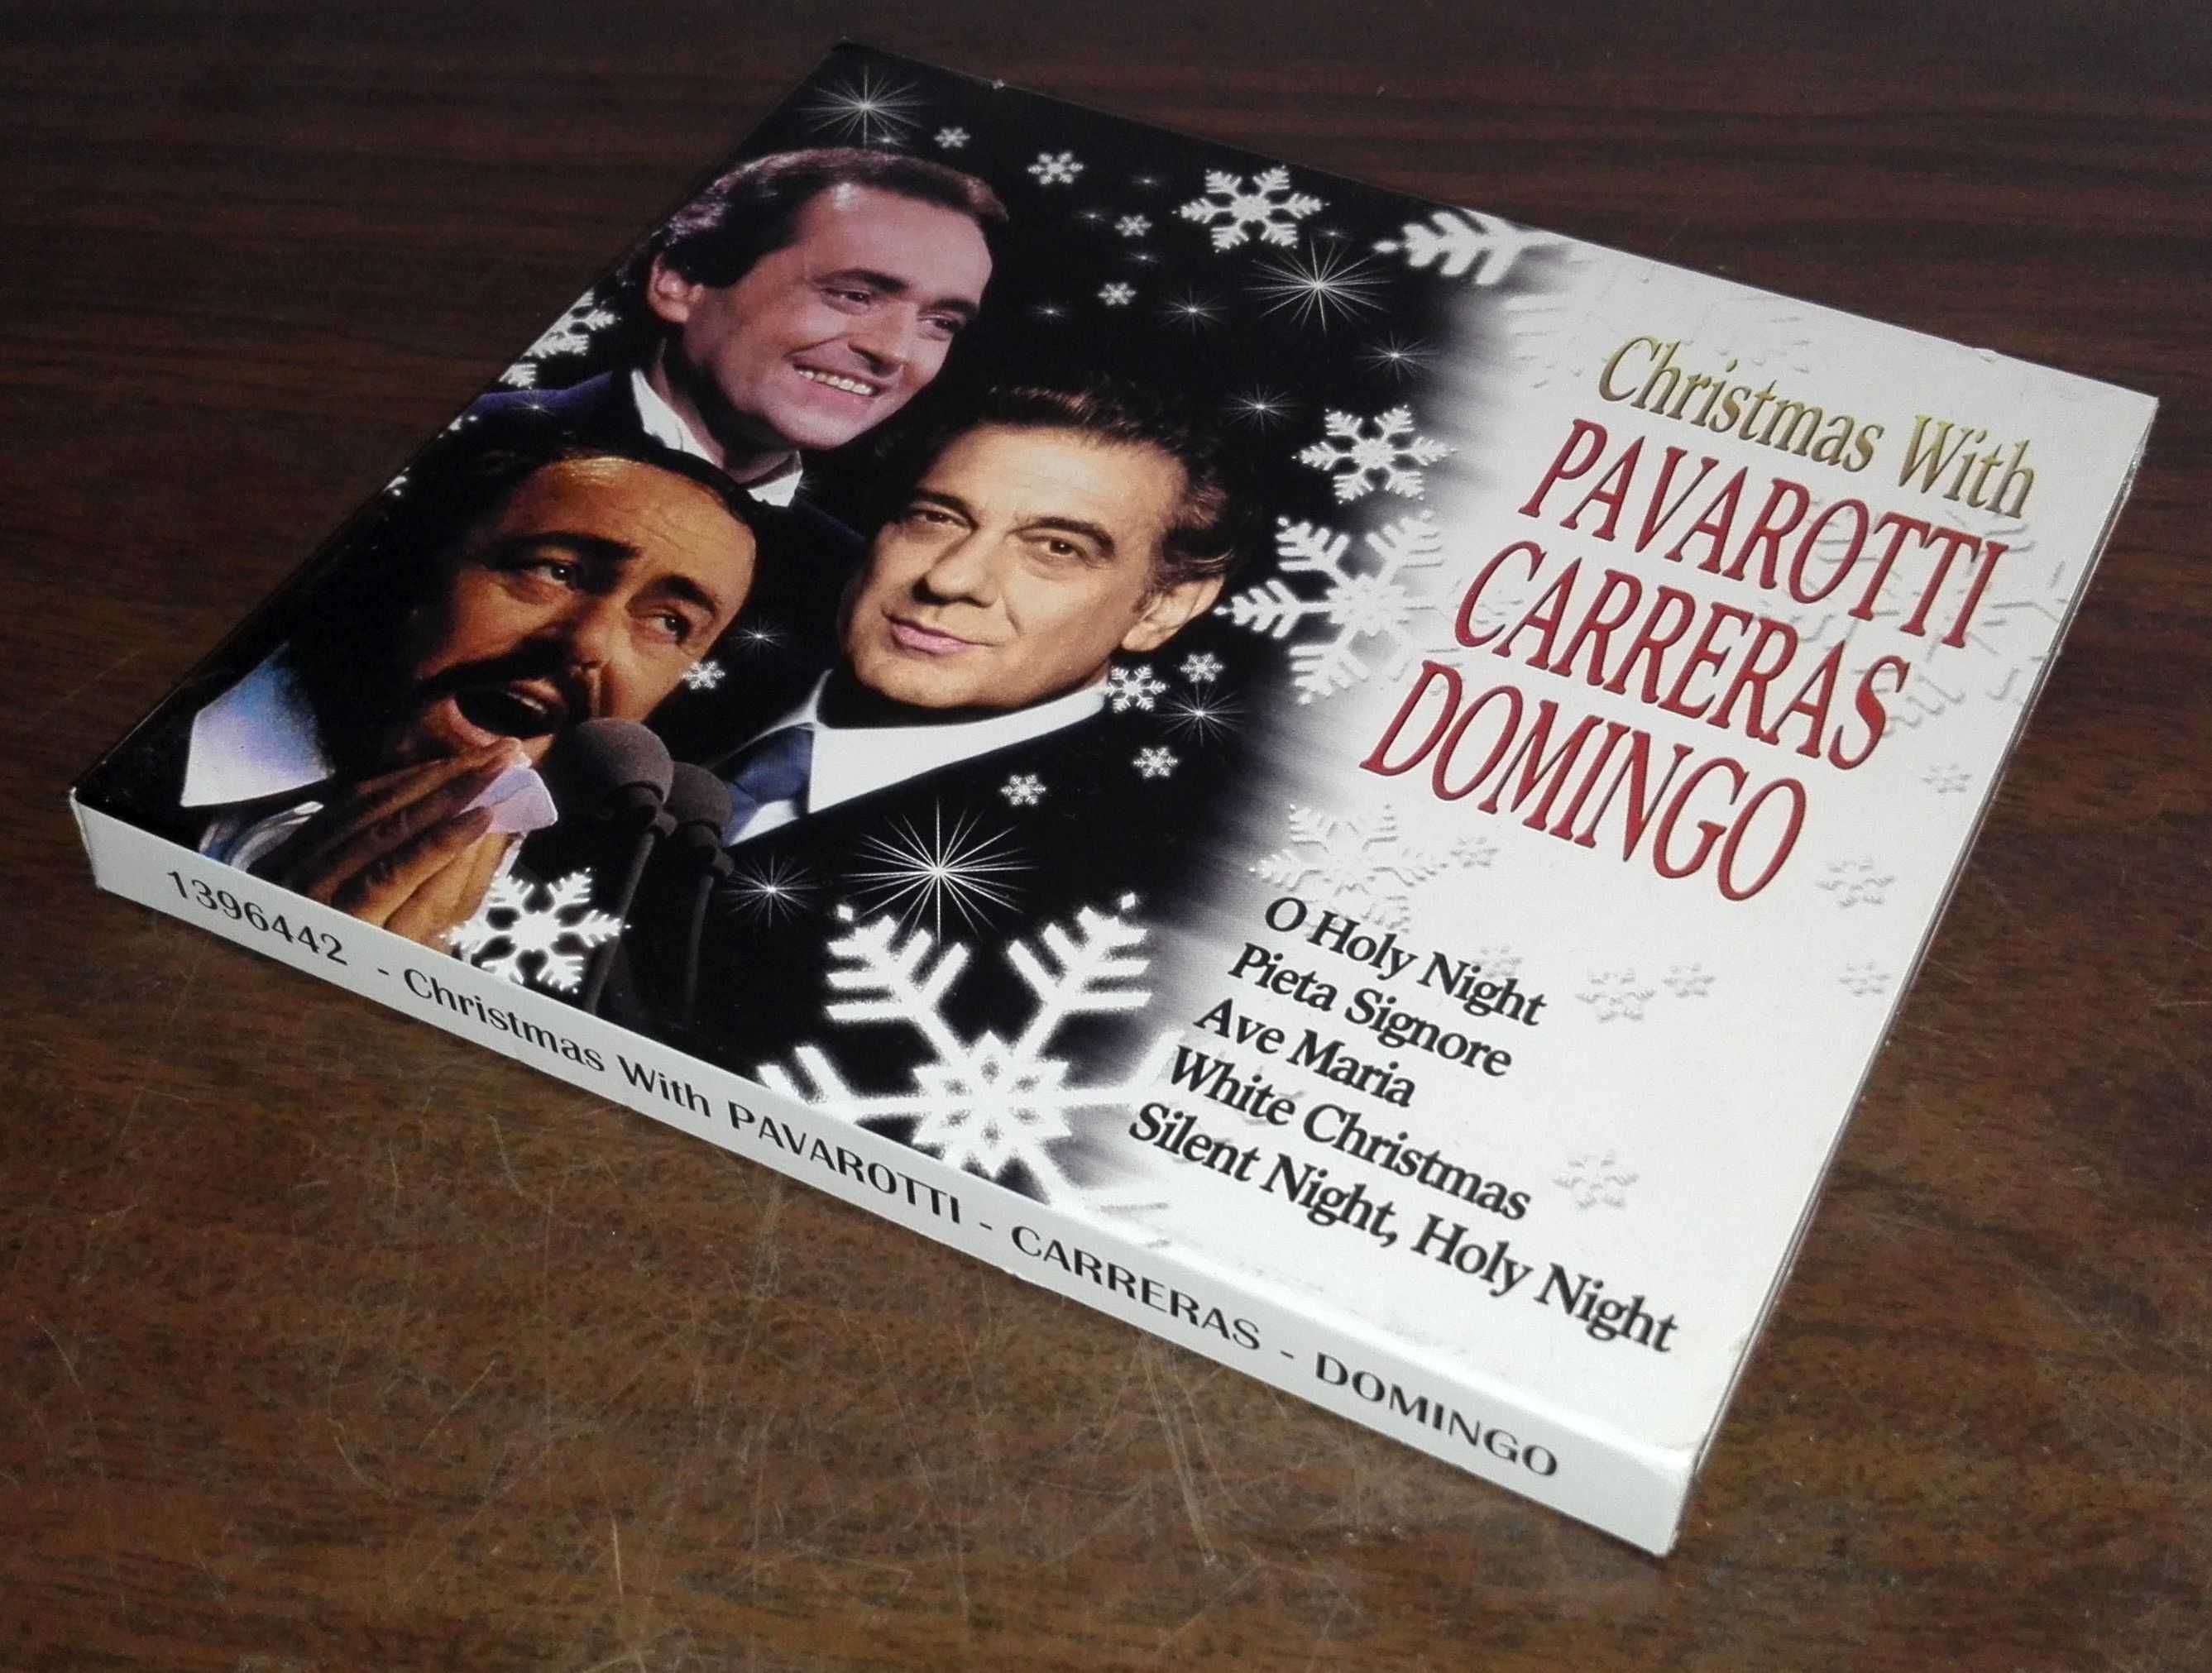 CD Christmas with Pavarotti, Carreras, Domingo